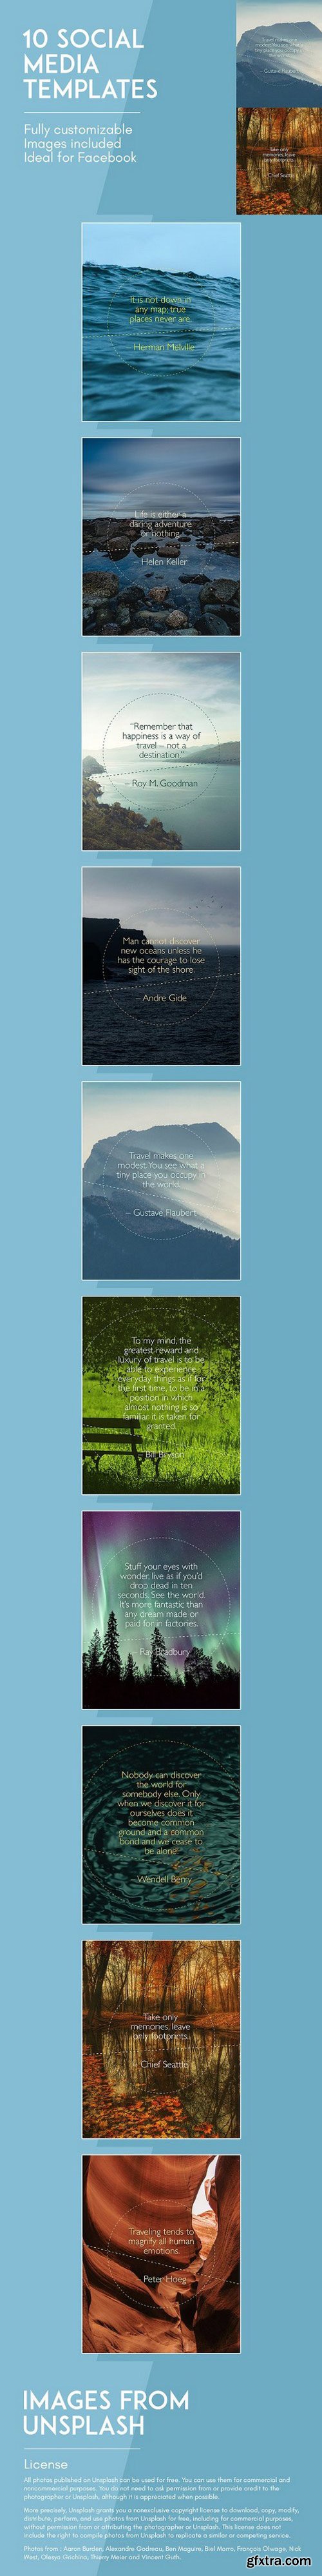 CM - Travel quotes - Landscapes theme 1617474